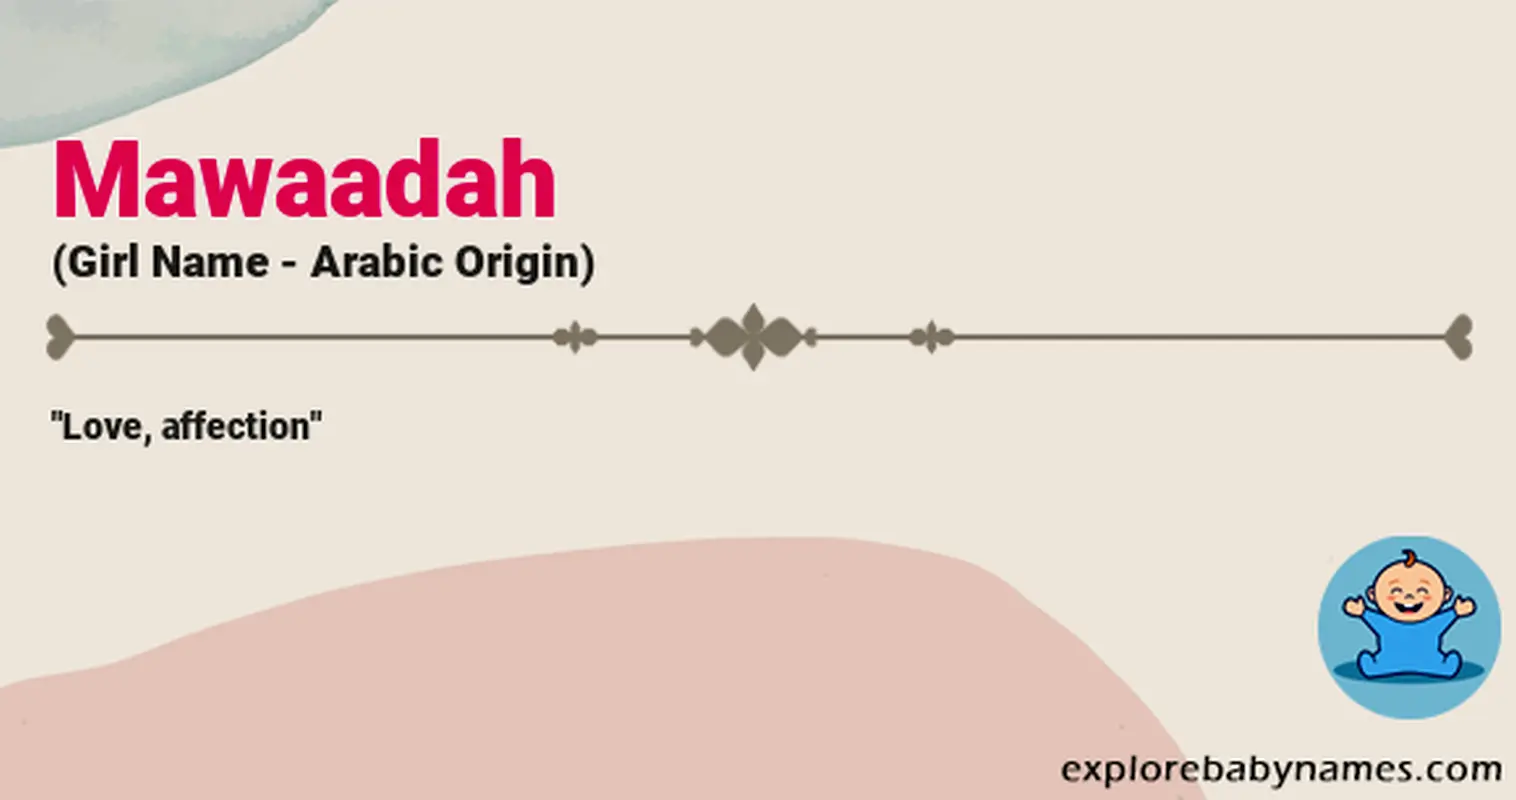 Meaning of Mawaadah